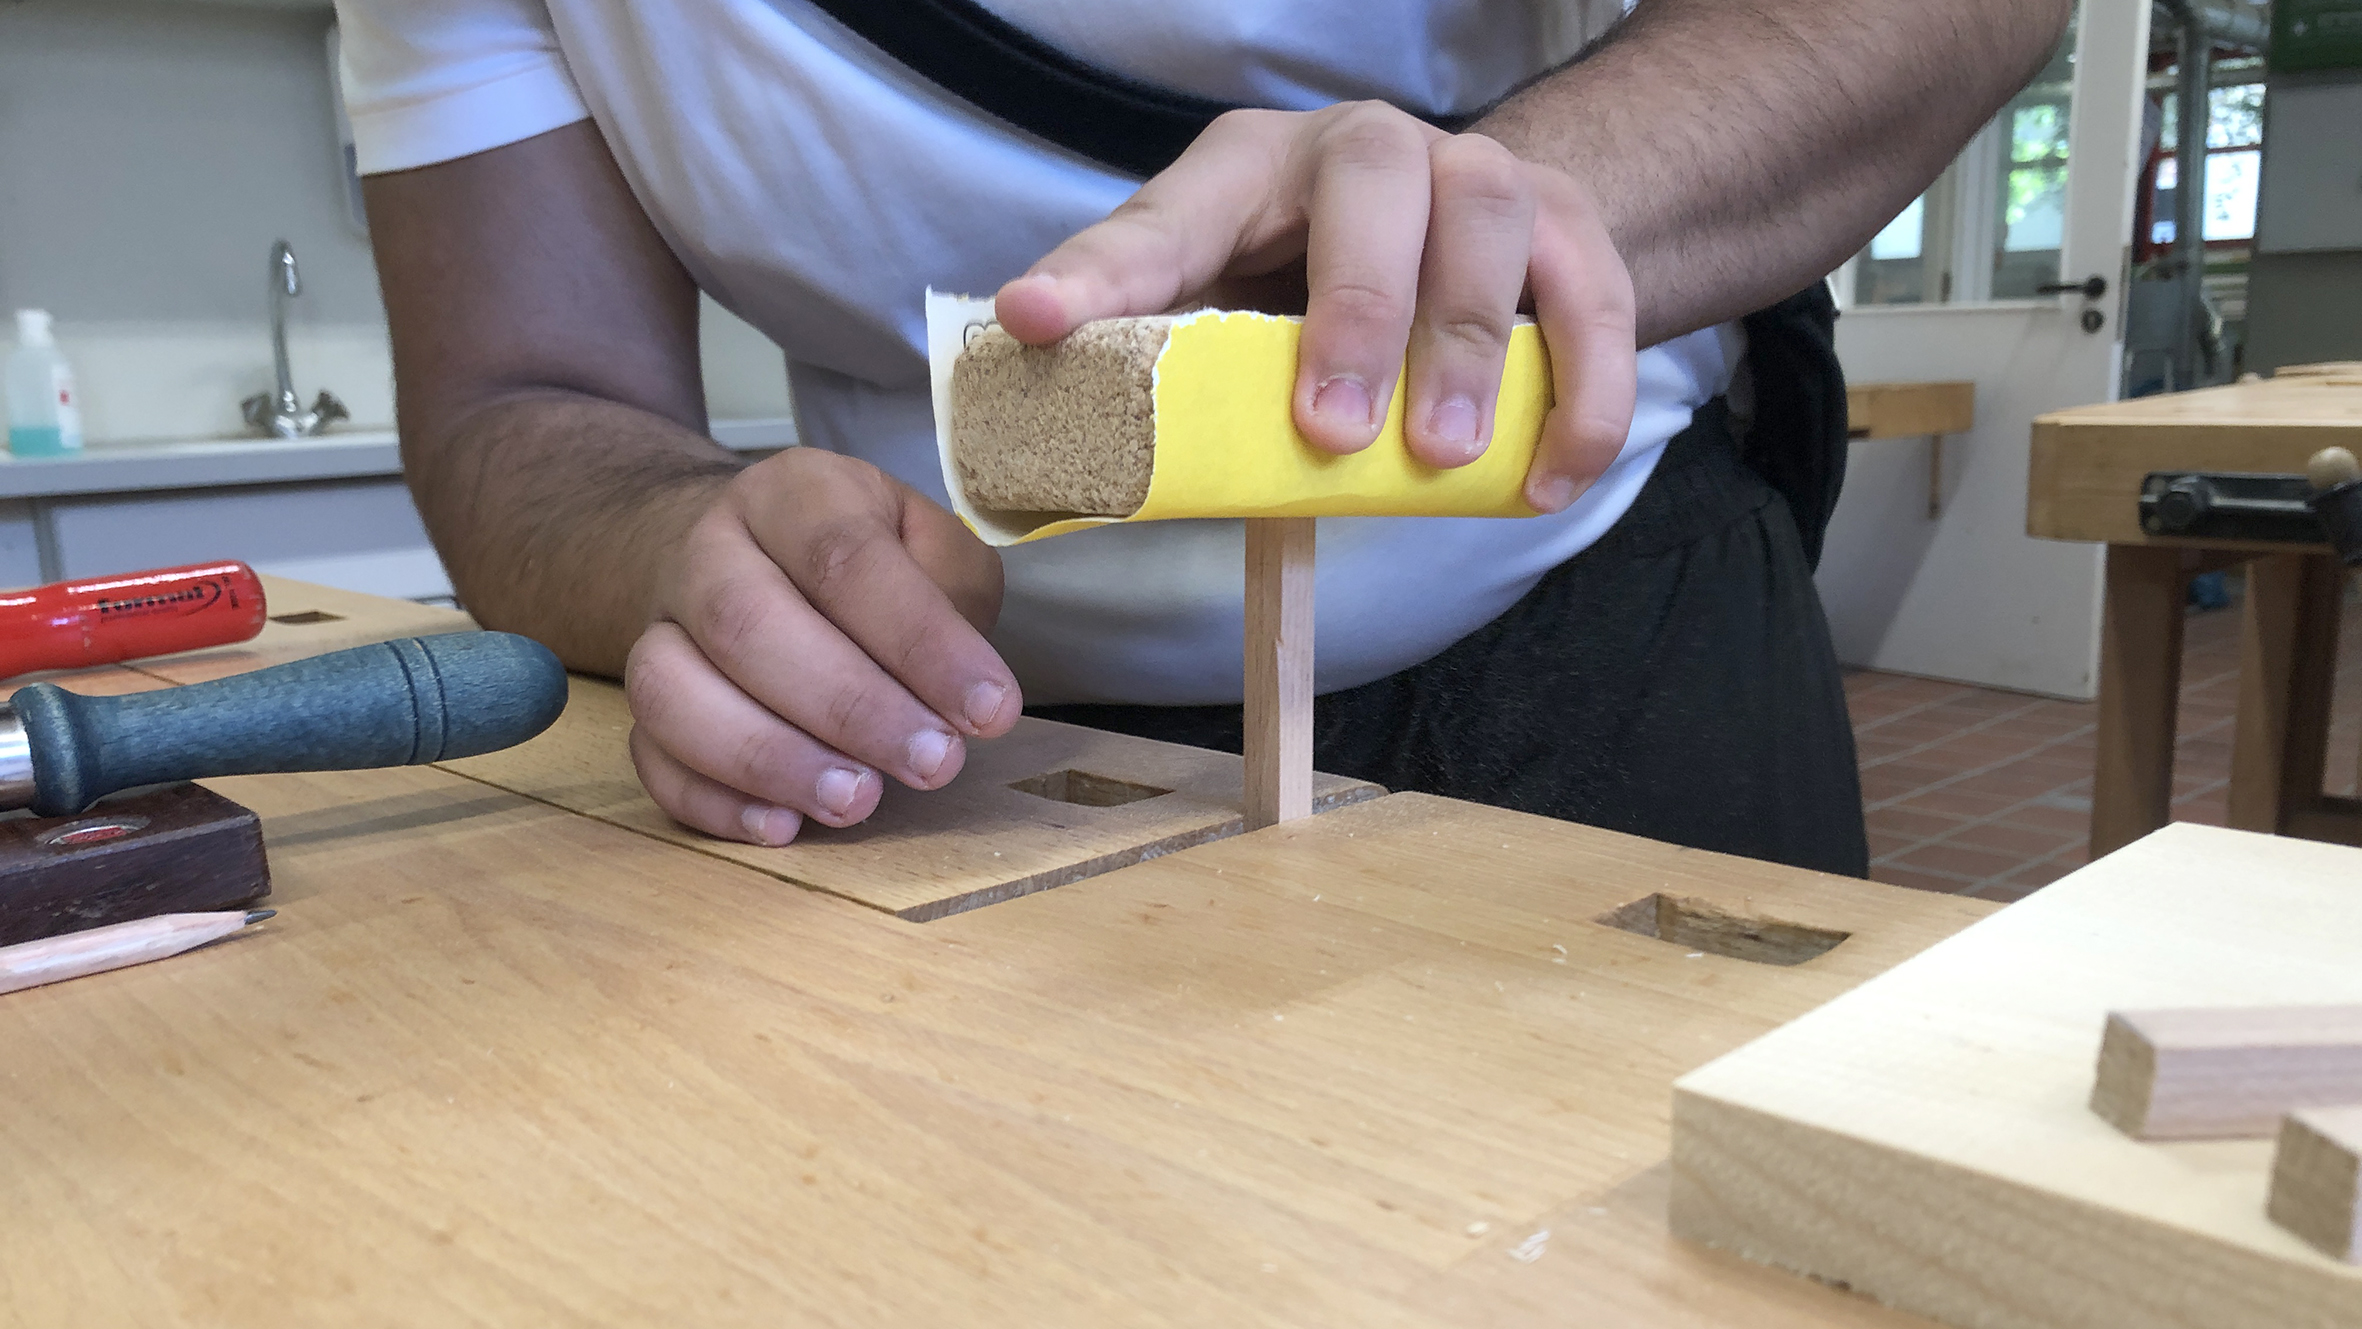 RWB Essen - #OPRA++ - Bilder aus dem Workshop "Holztechnik - Schlüsselanhänger aus Holz selbstgemacht"